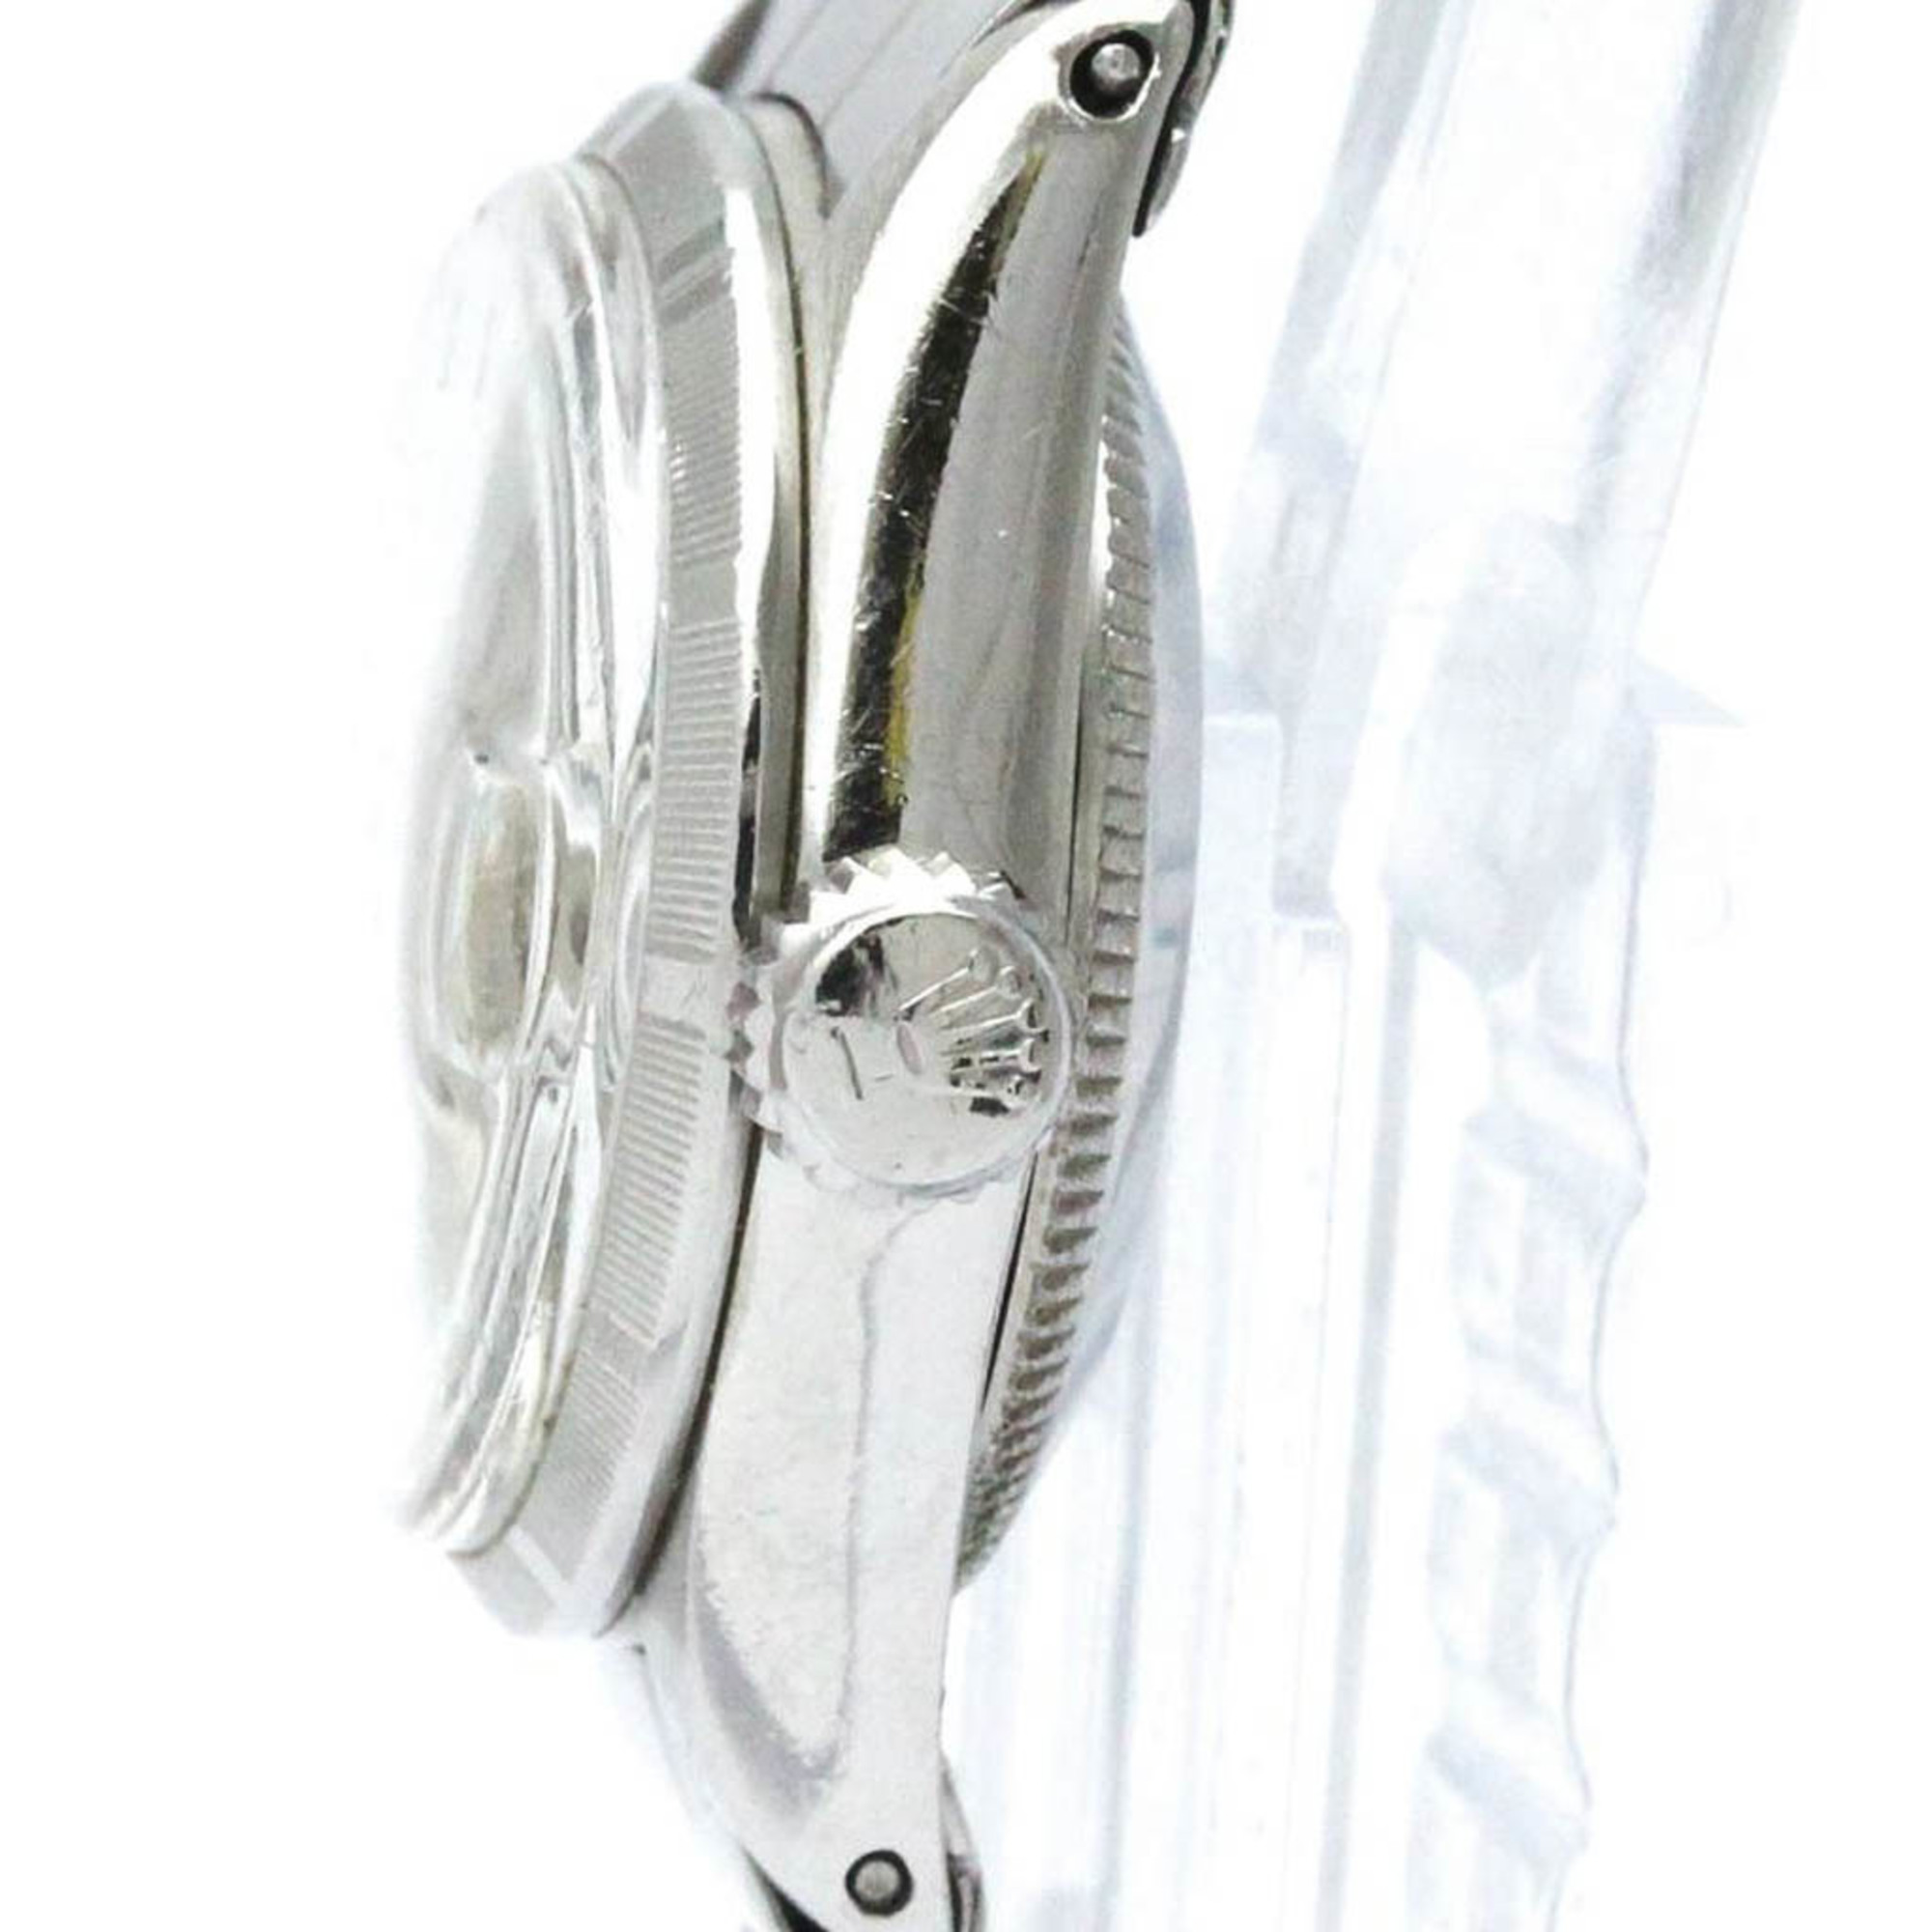 ロレックス (ROLEX) オイスター パーペチュアル デイト 6519 ステンレススチール 自動巻き レディース 時計